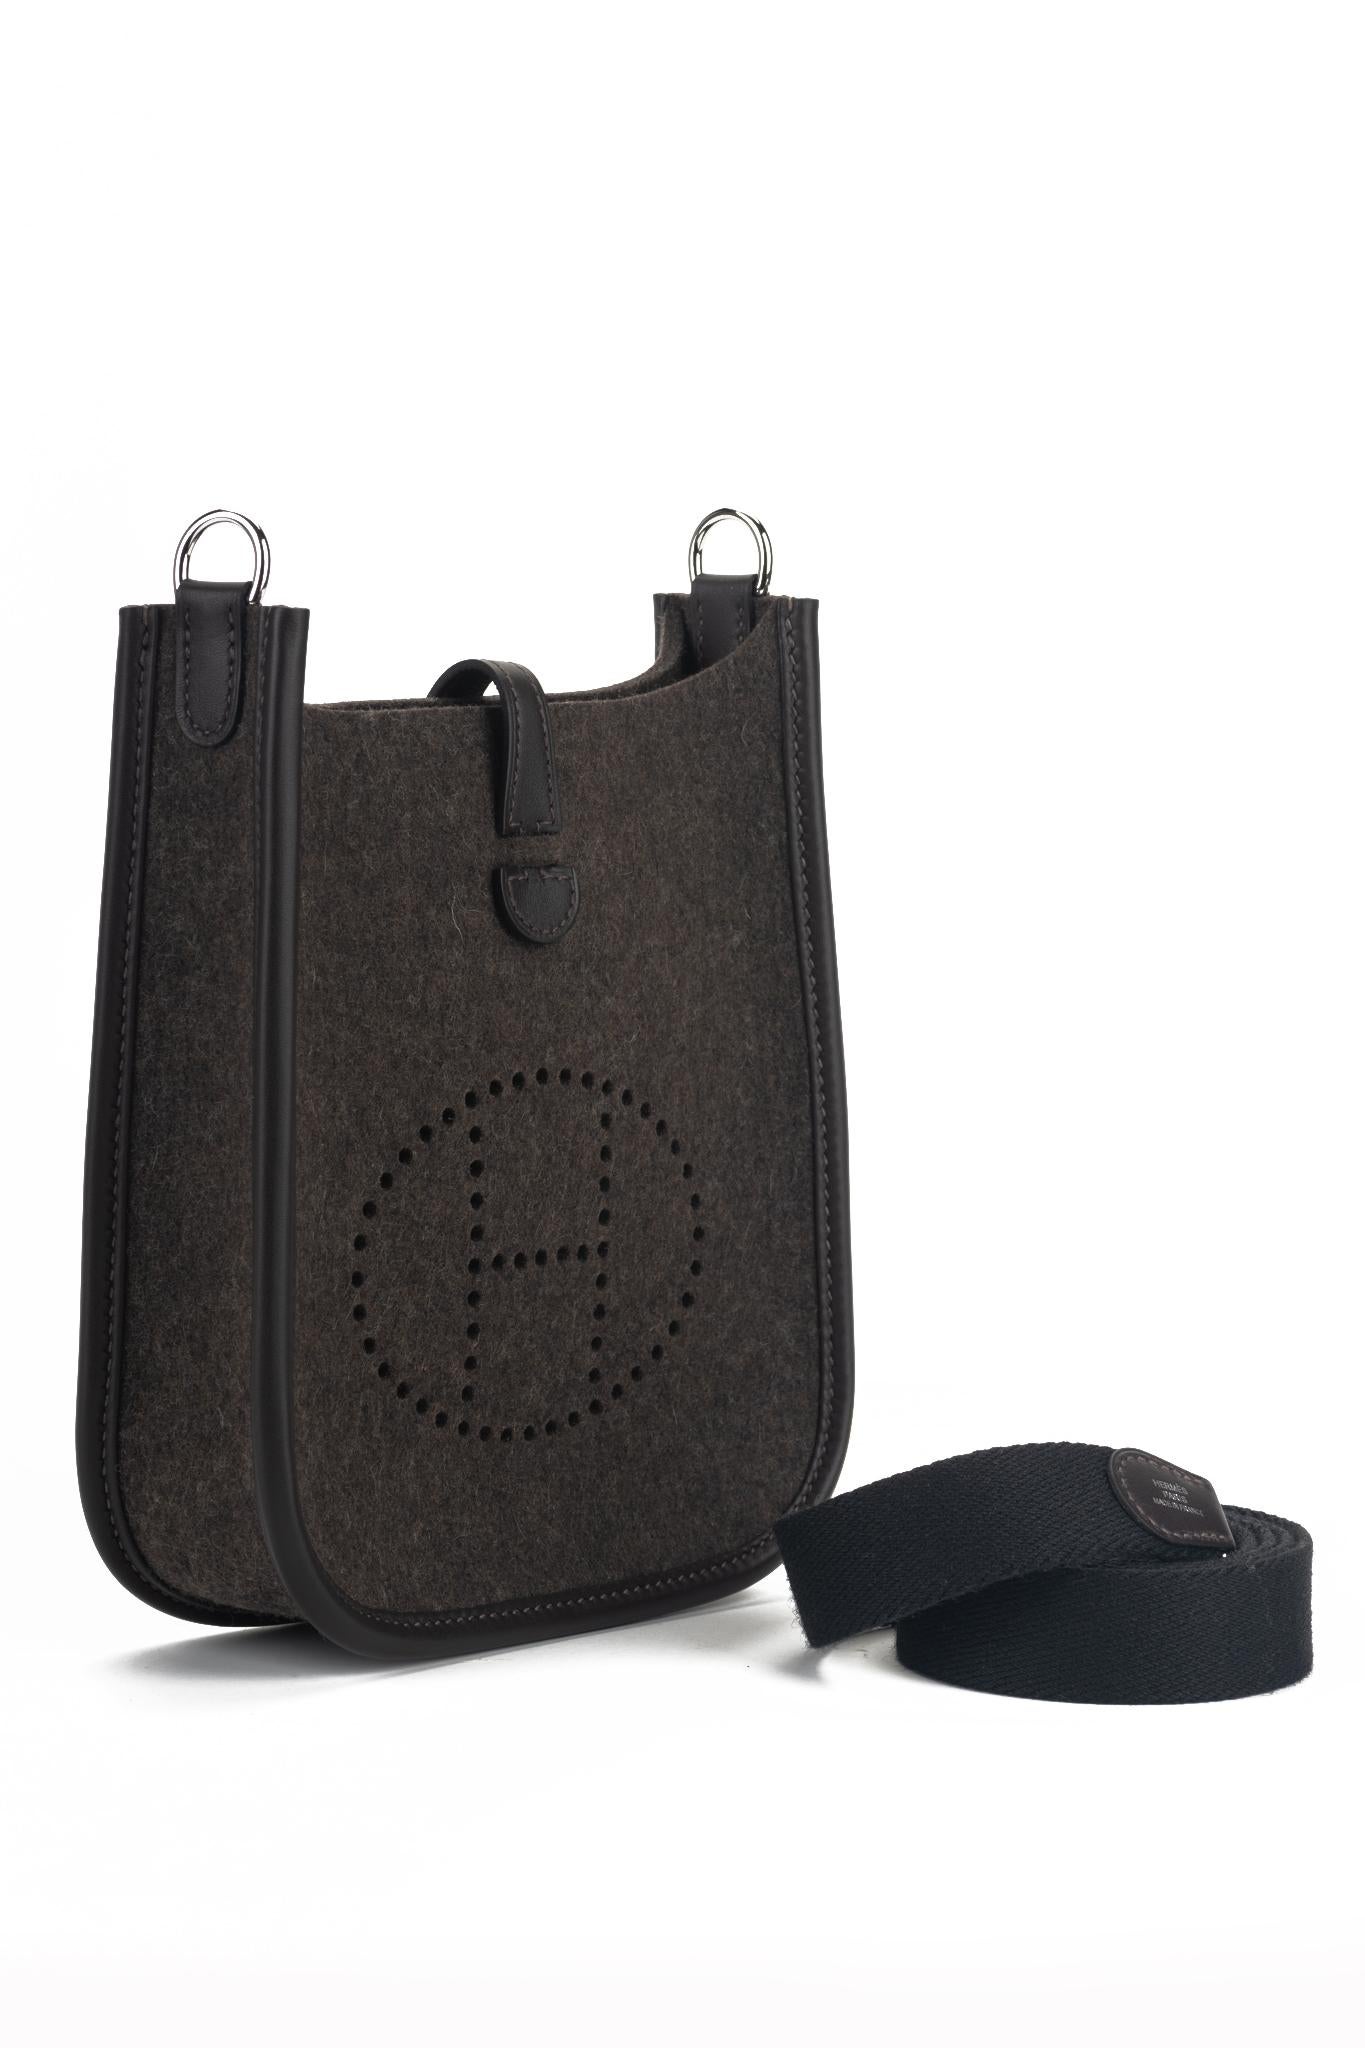 Rare sac à bandoulière Hermès mini Evelyne en feutre brun, cuir swift brun avec matériel palladium. Jamais utilisé. Daté 